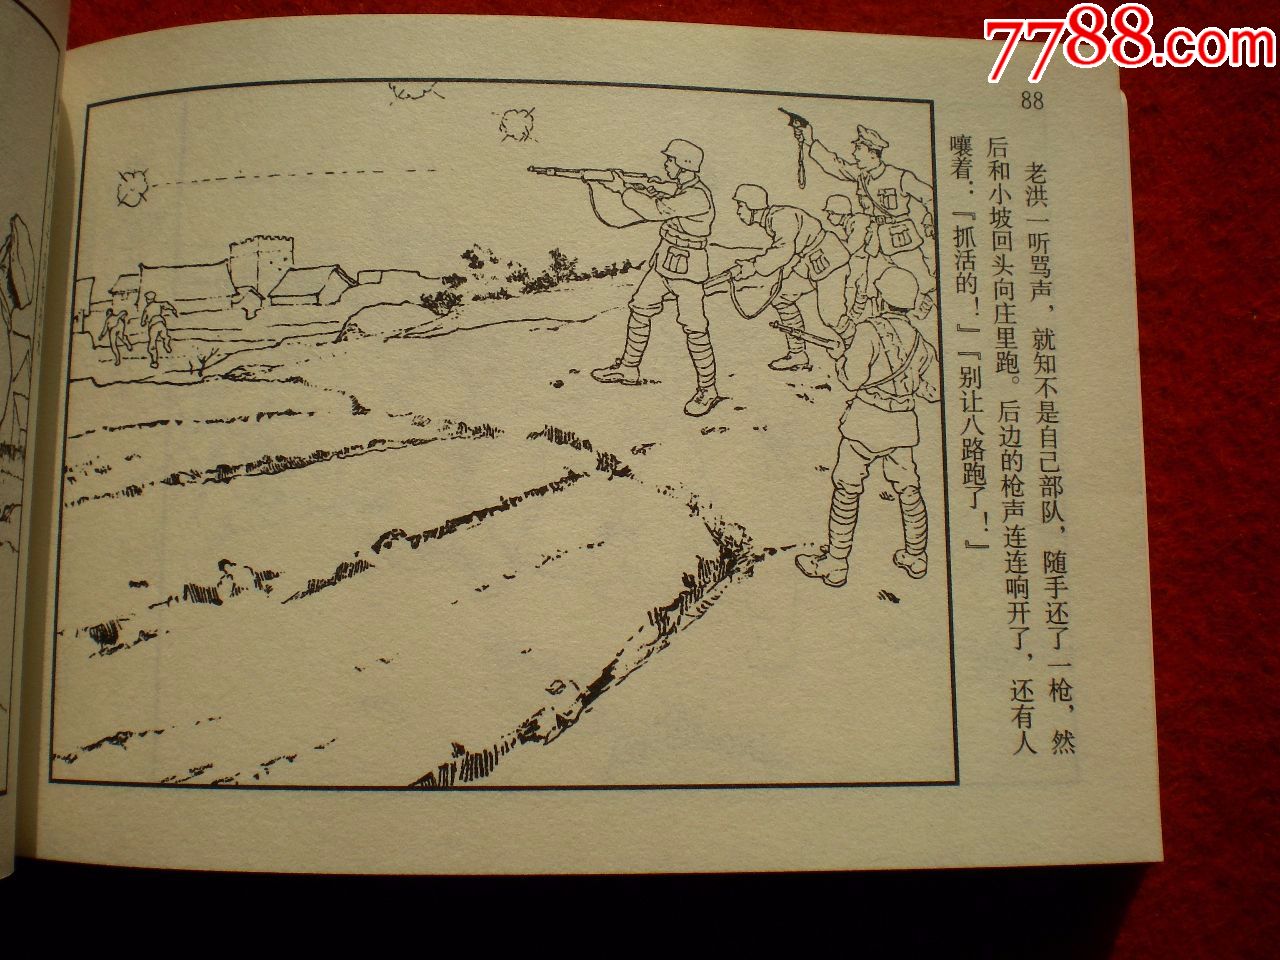 获奖连环画《铁道游击队》之三《夜袭临城》韩和平,丁斌曾绘画,一版二